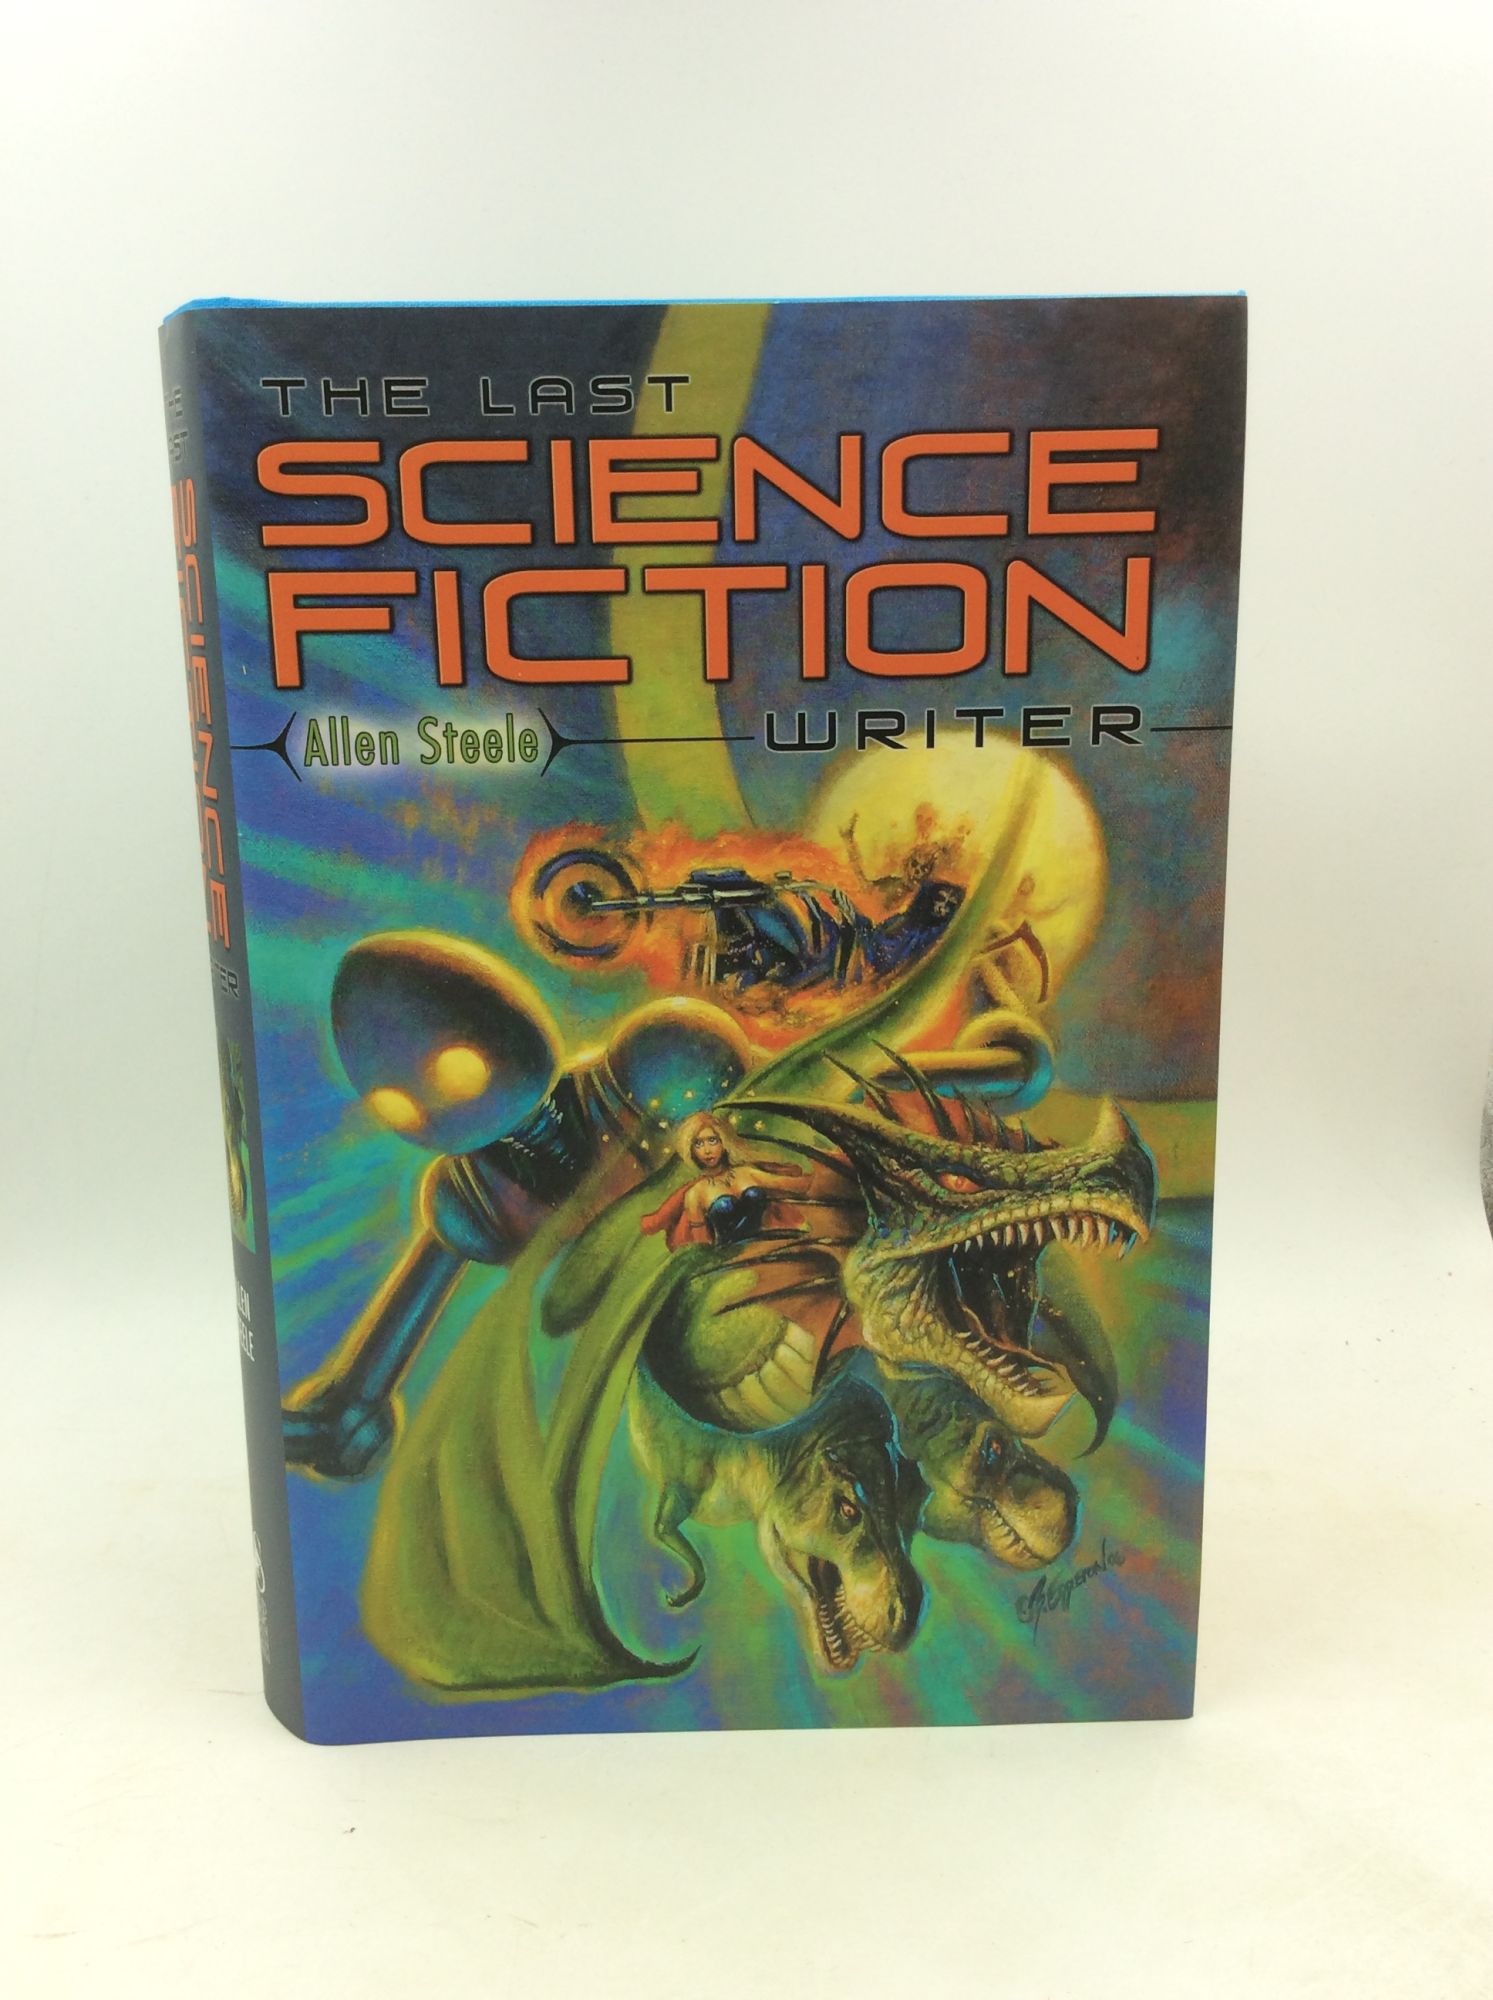 Allen Steele - The Last Science Fiction Writer